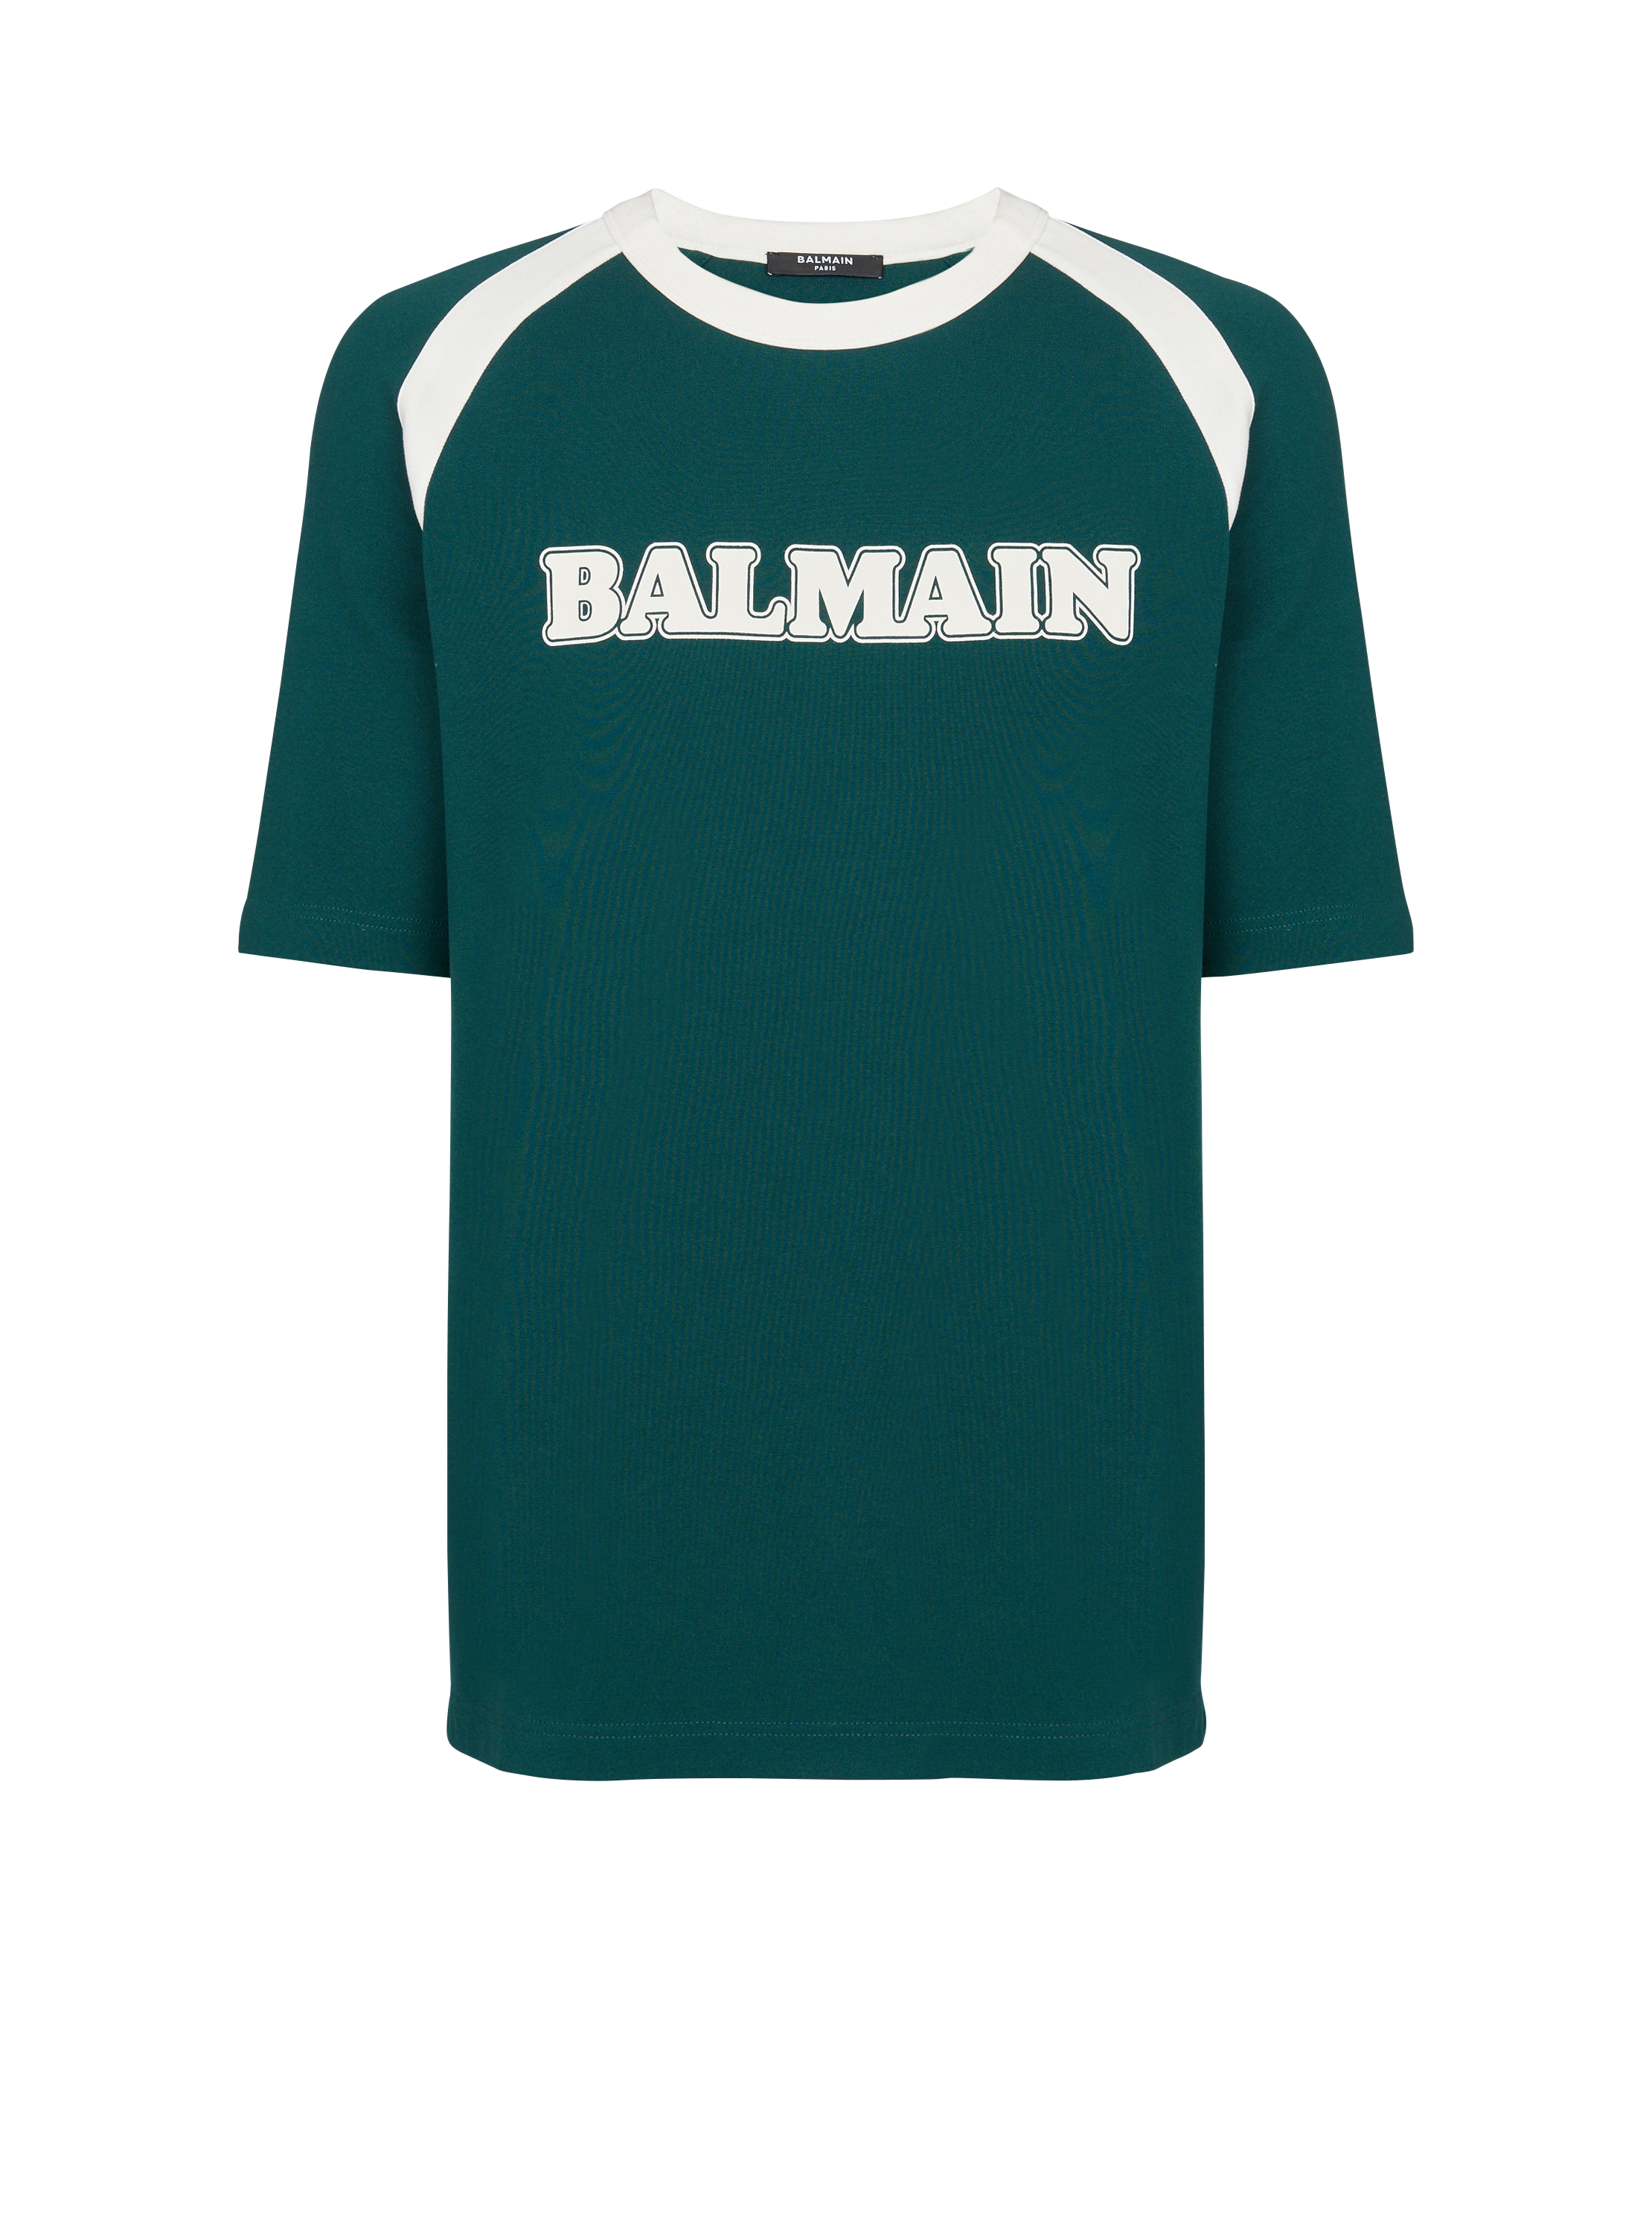 Camiseta retro Balmain